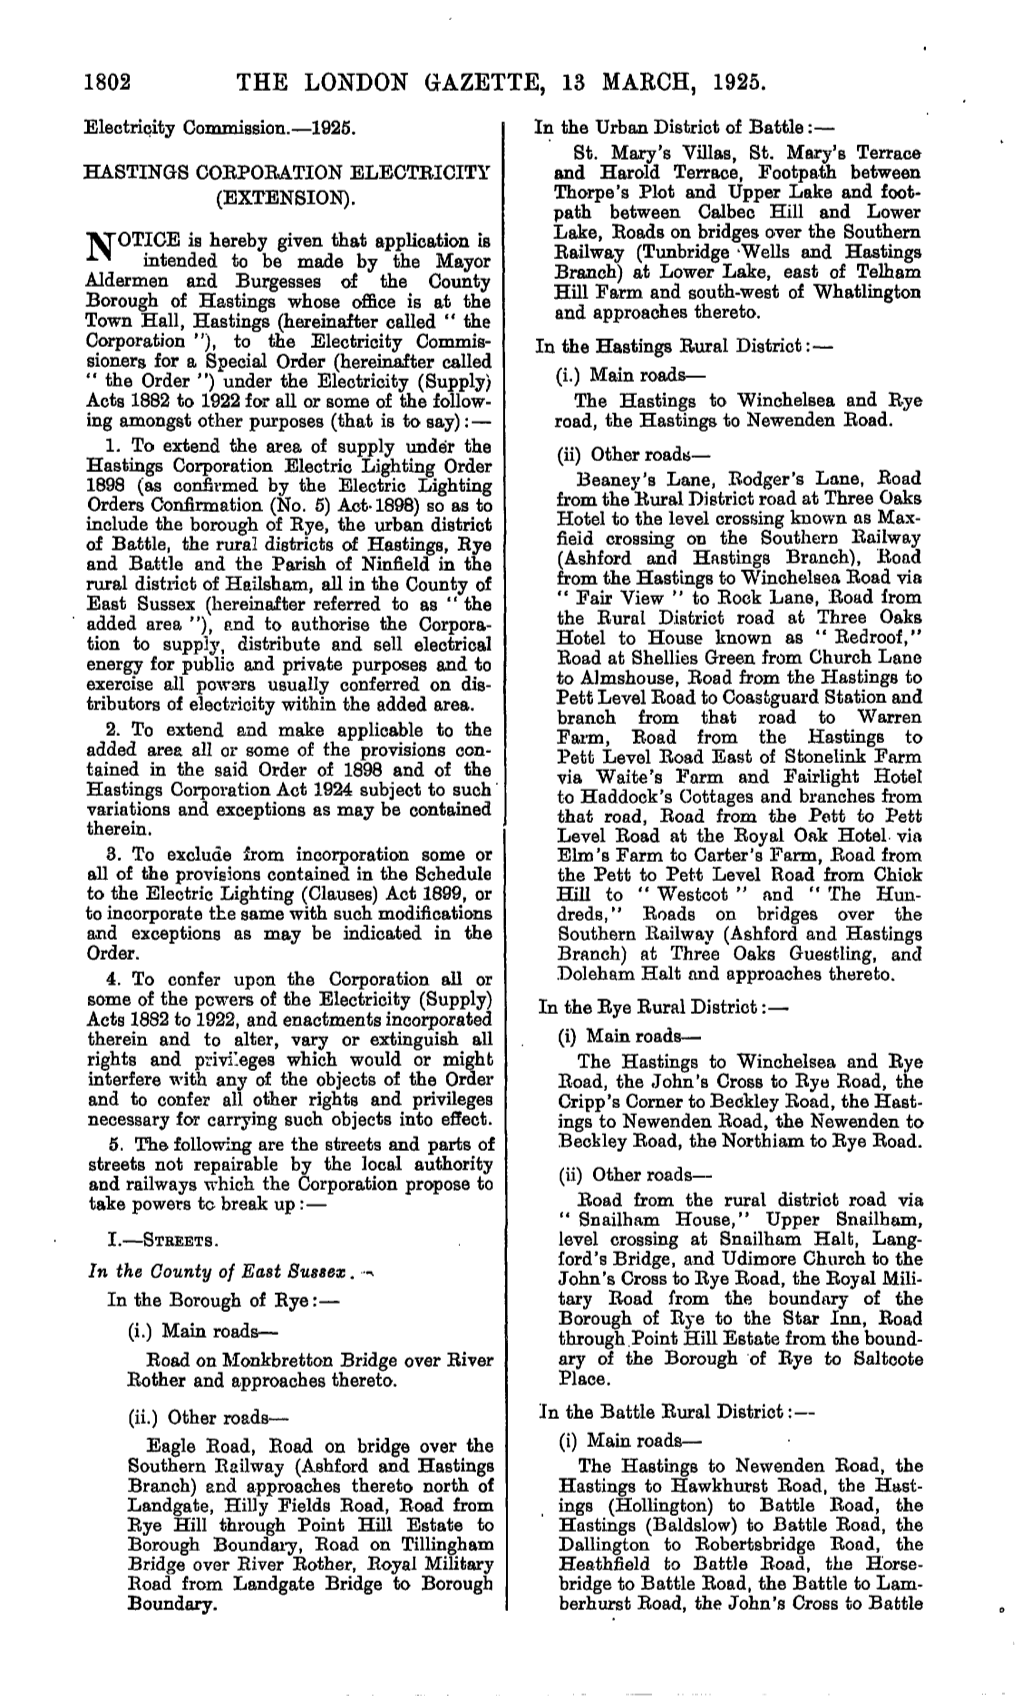 1802 the London Gazette, 13 March, 1925